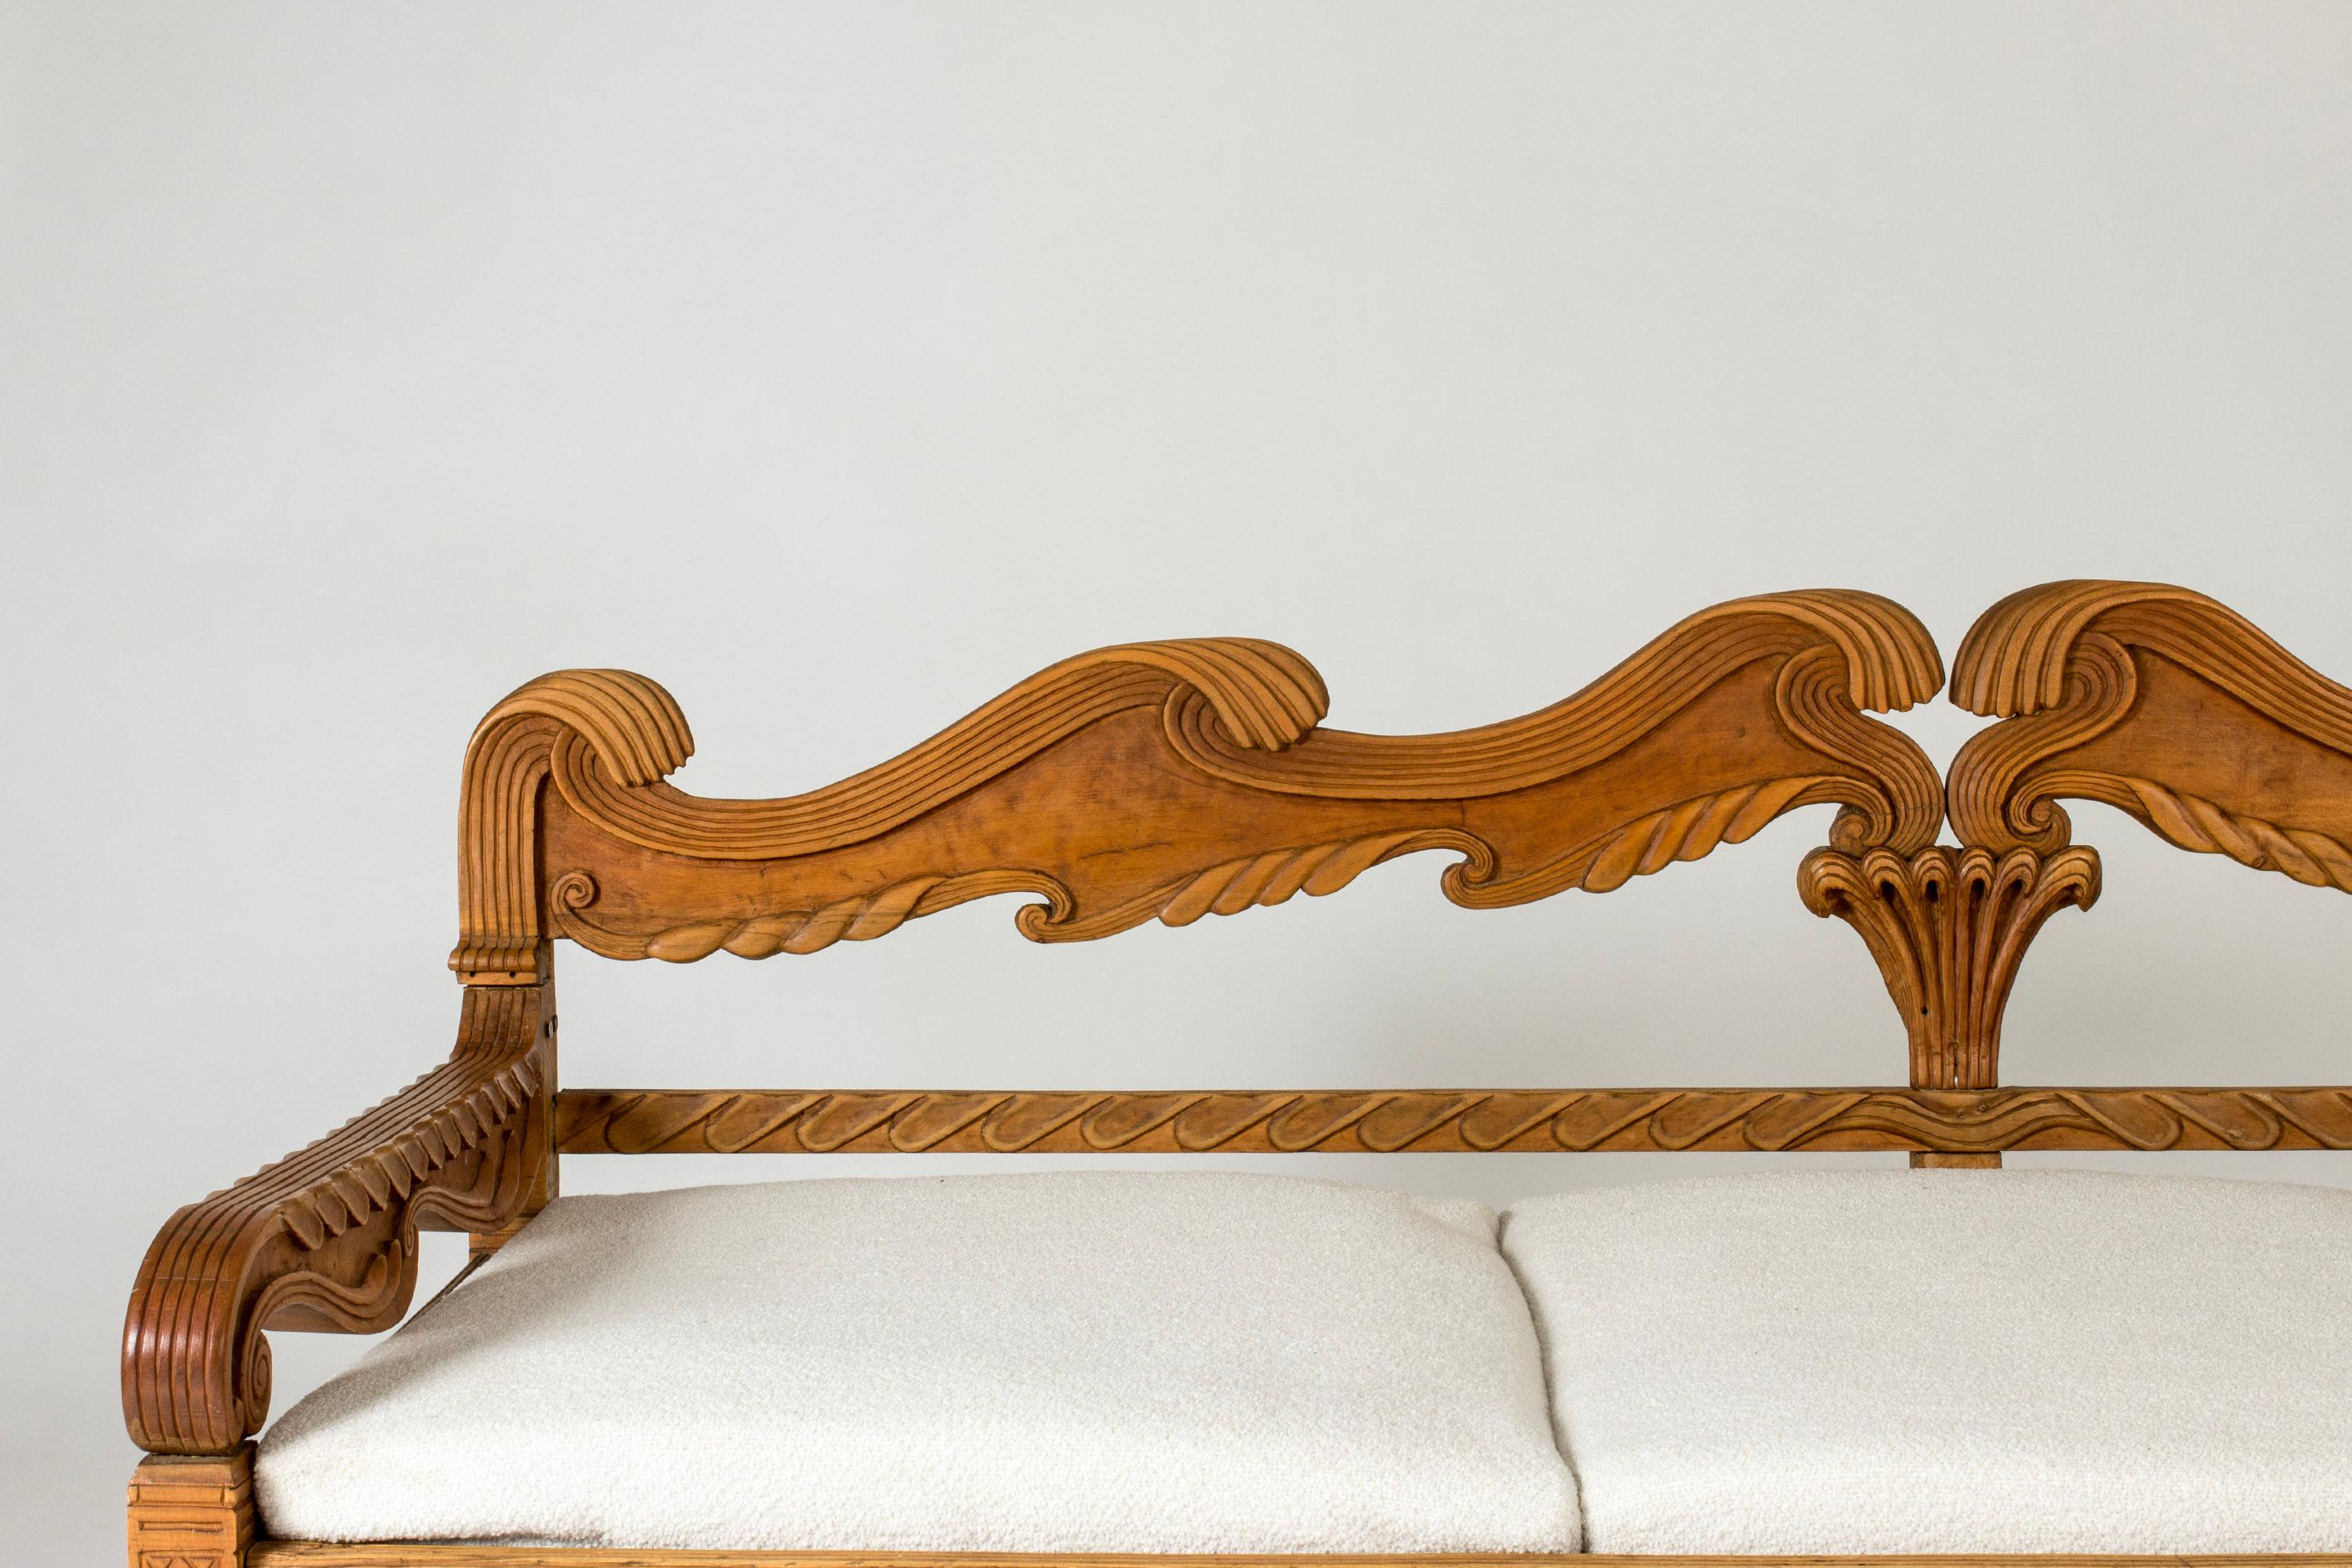 Atemberaubendes Sofa von Knut Fjaestad aus Eichenholz mit einem schönen, komplizierten geschnitzten Muster aus Blättern, Wellen und Linien, das sich über das ganze Stück erstreckt.

Knut Fjaestad war ein Stockholmer Kaufmann, der im ersten Jahrzehnt